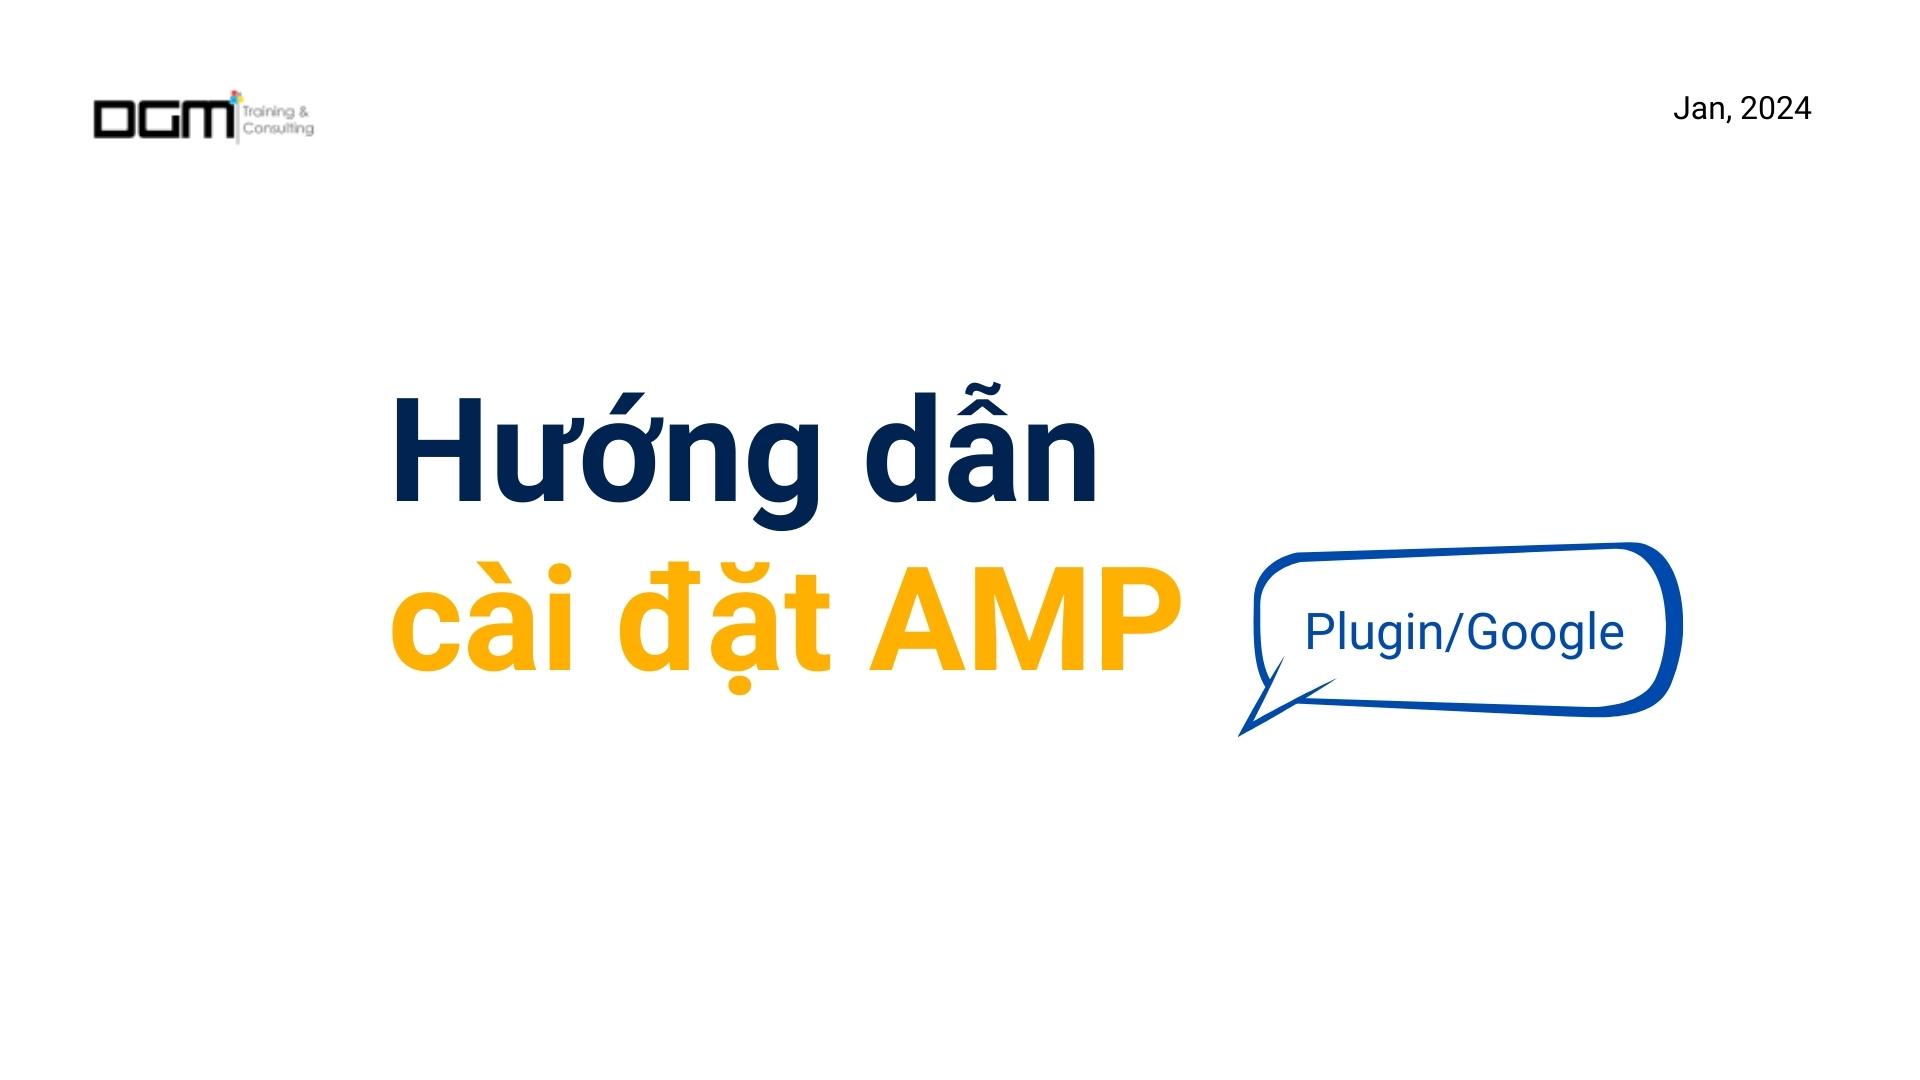 Huong-dan-cai-dat-AMP